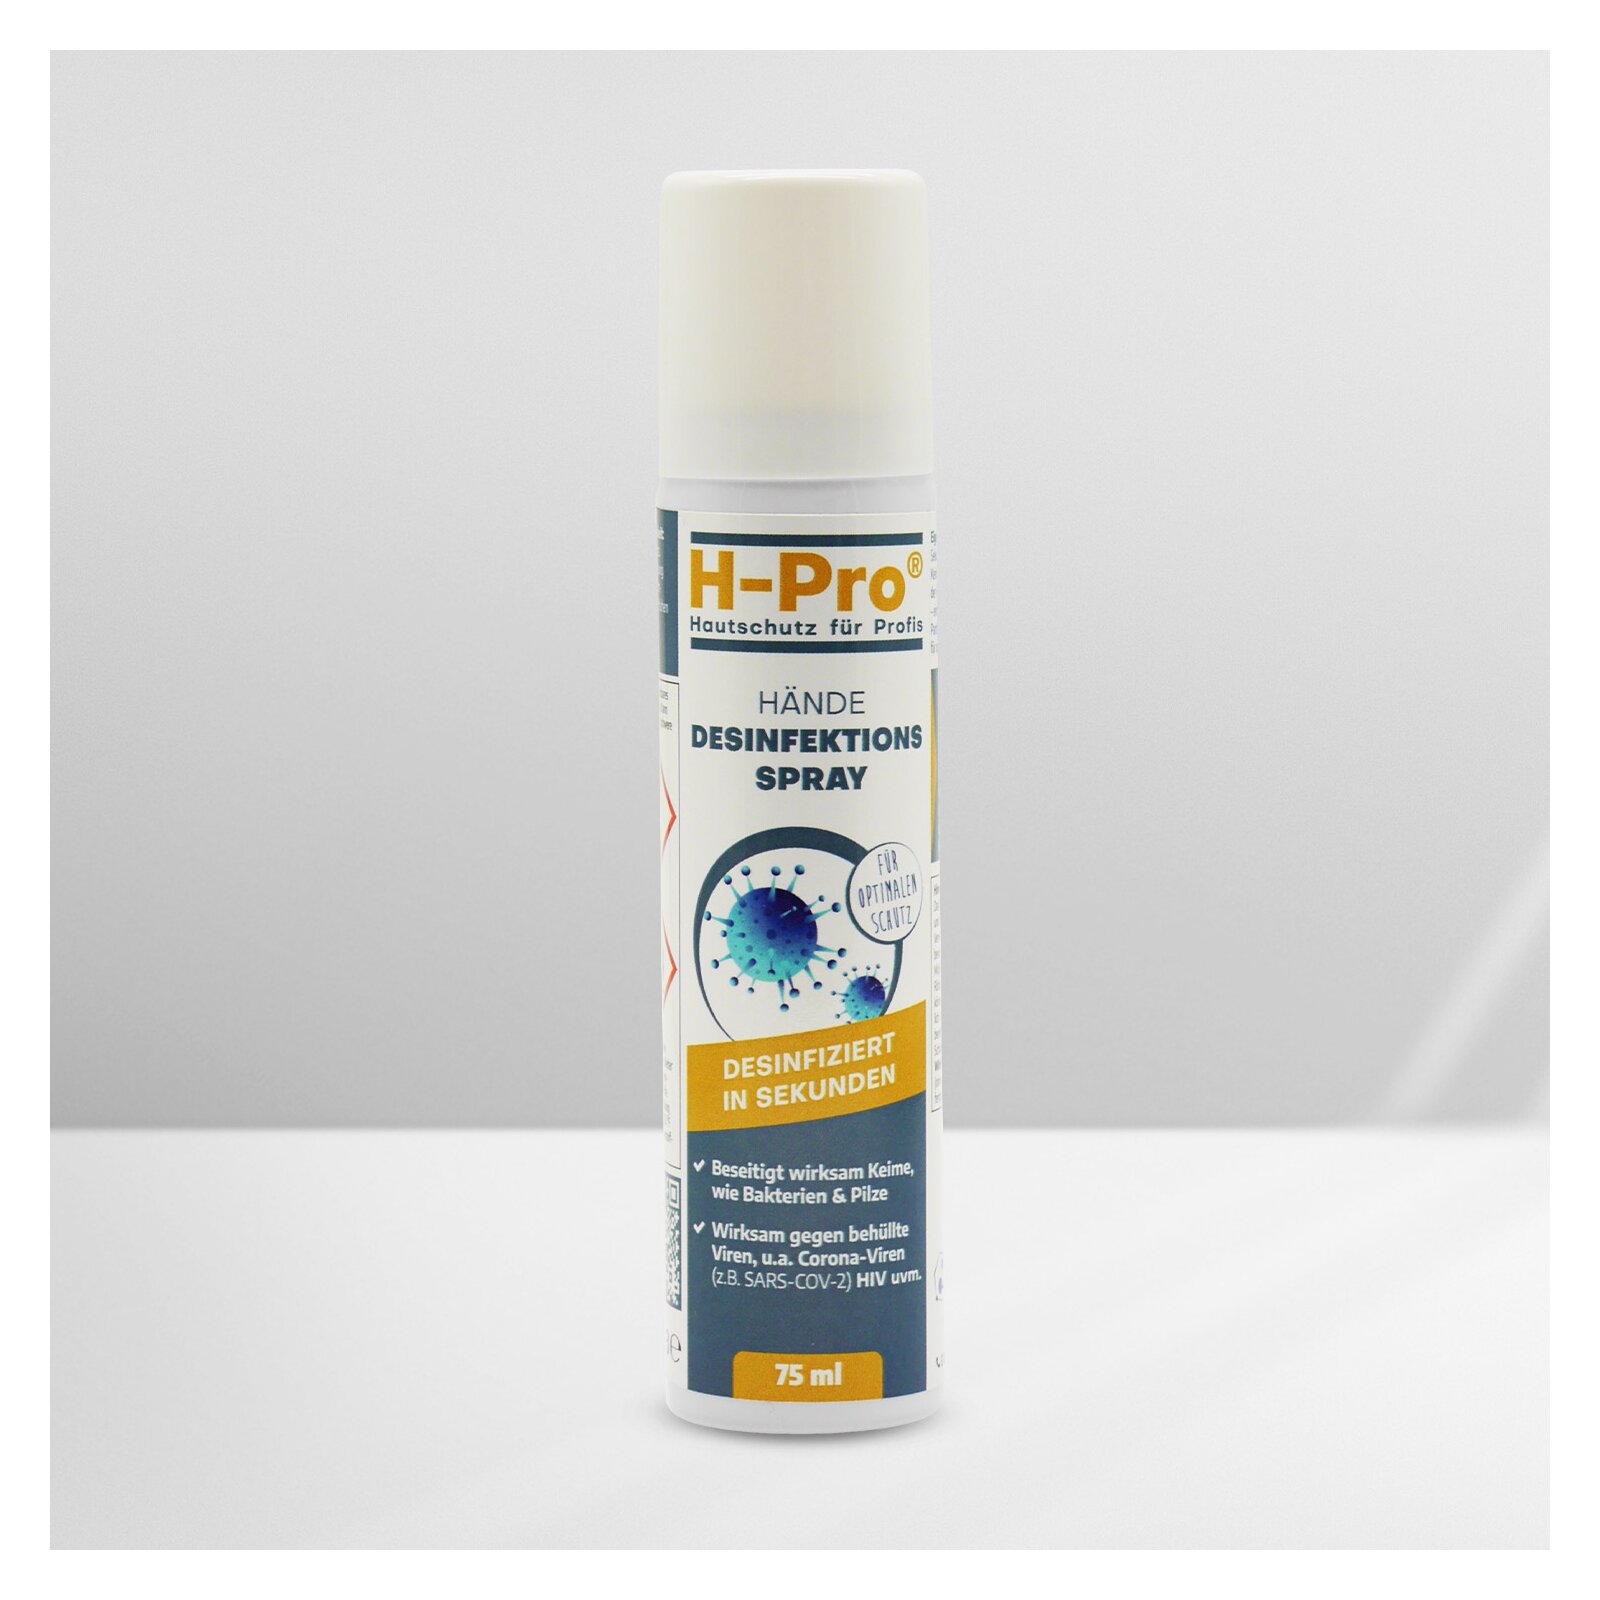 HPro(R) Händedesinfektion Spray 75ml 1 x Dose